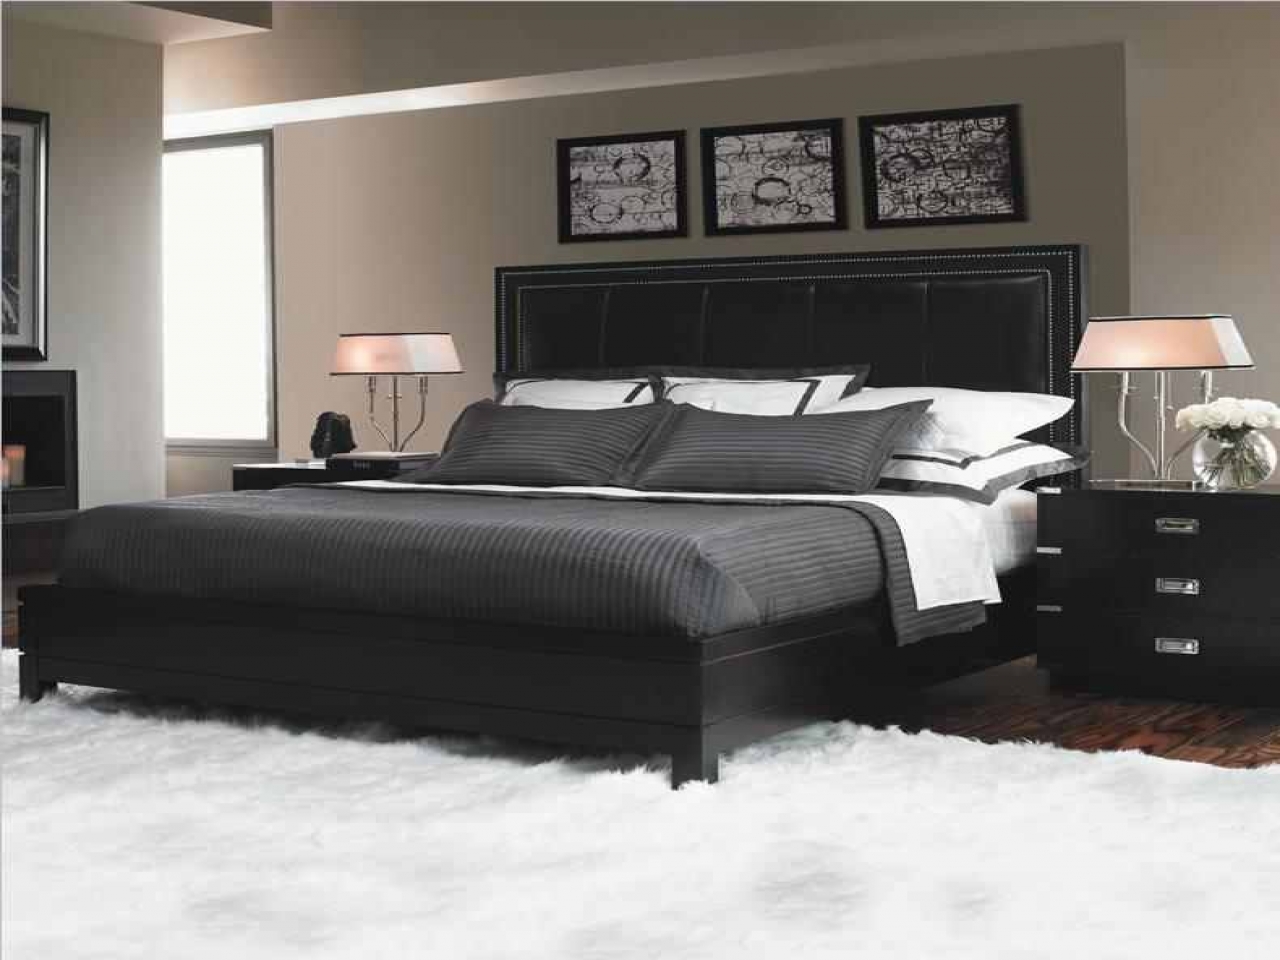 used ikea bedroom furniture